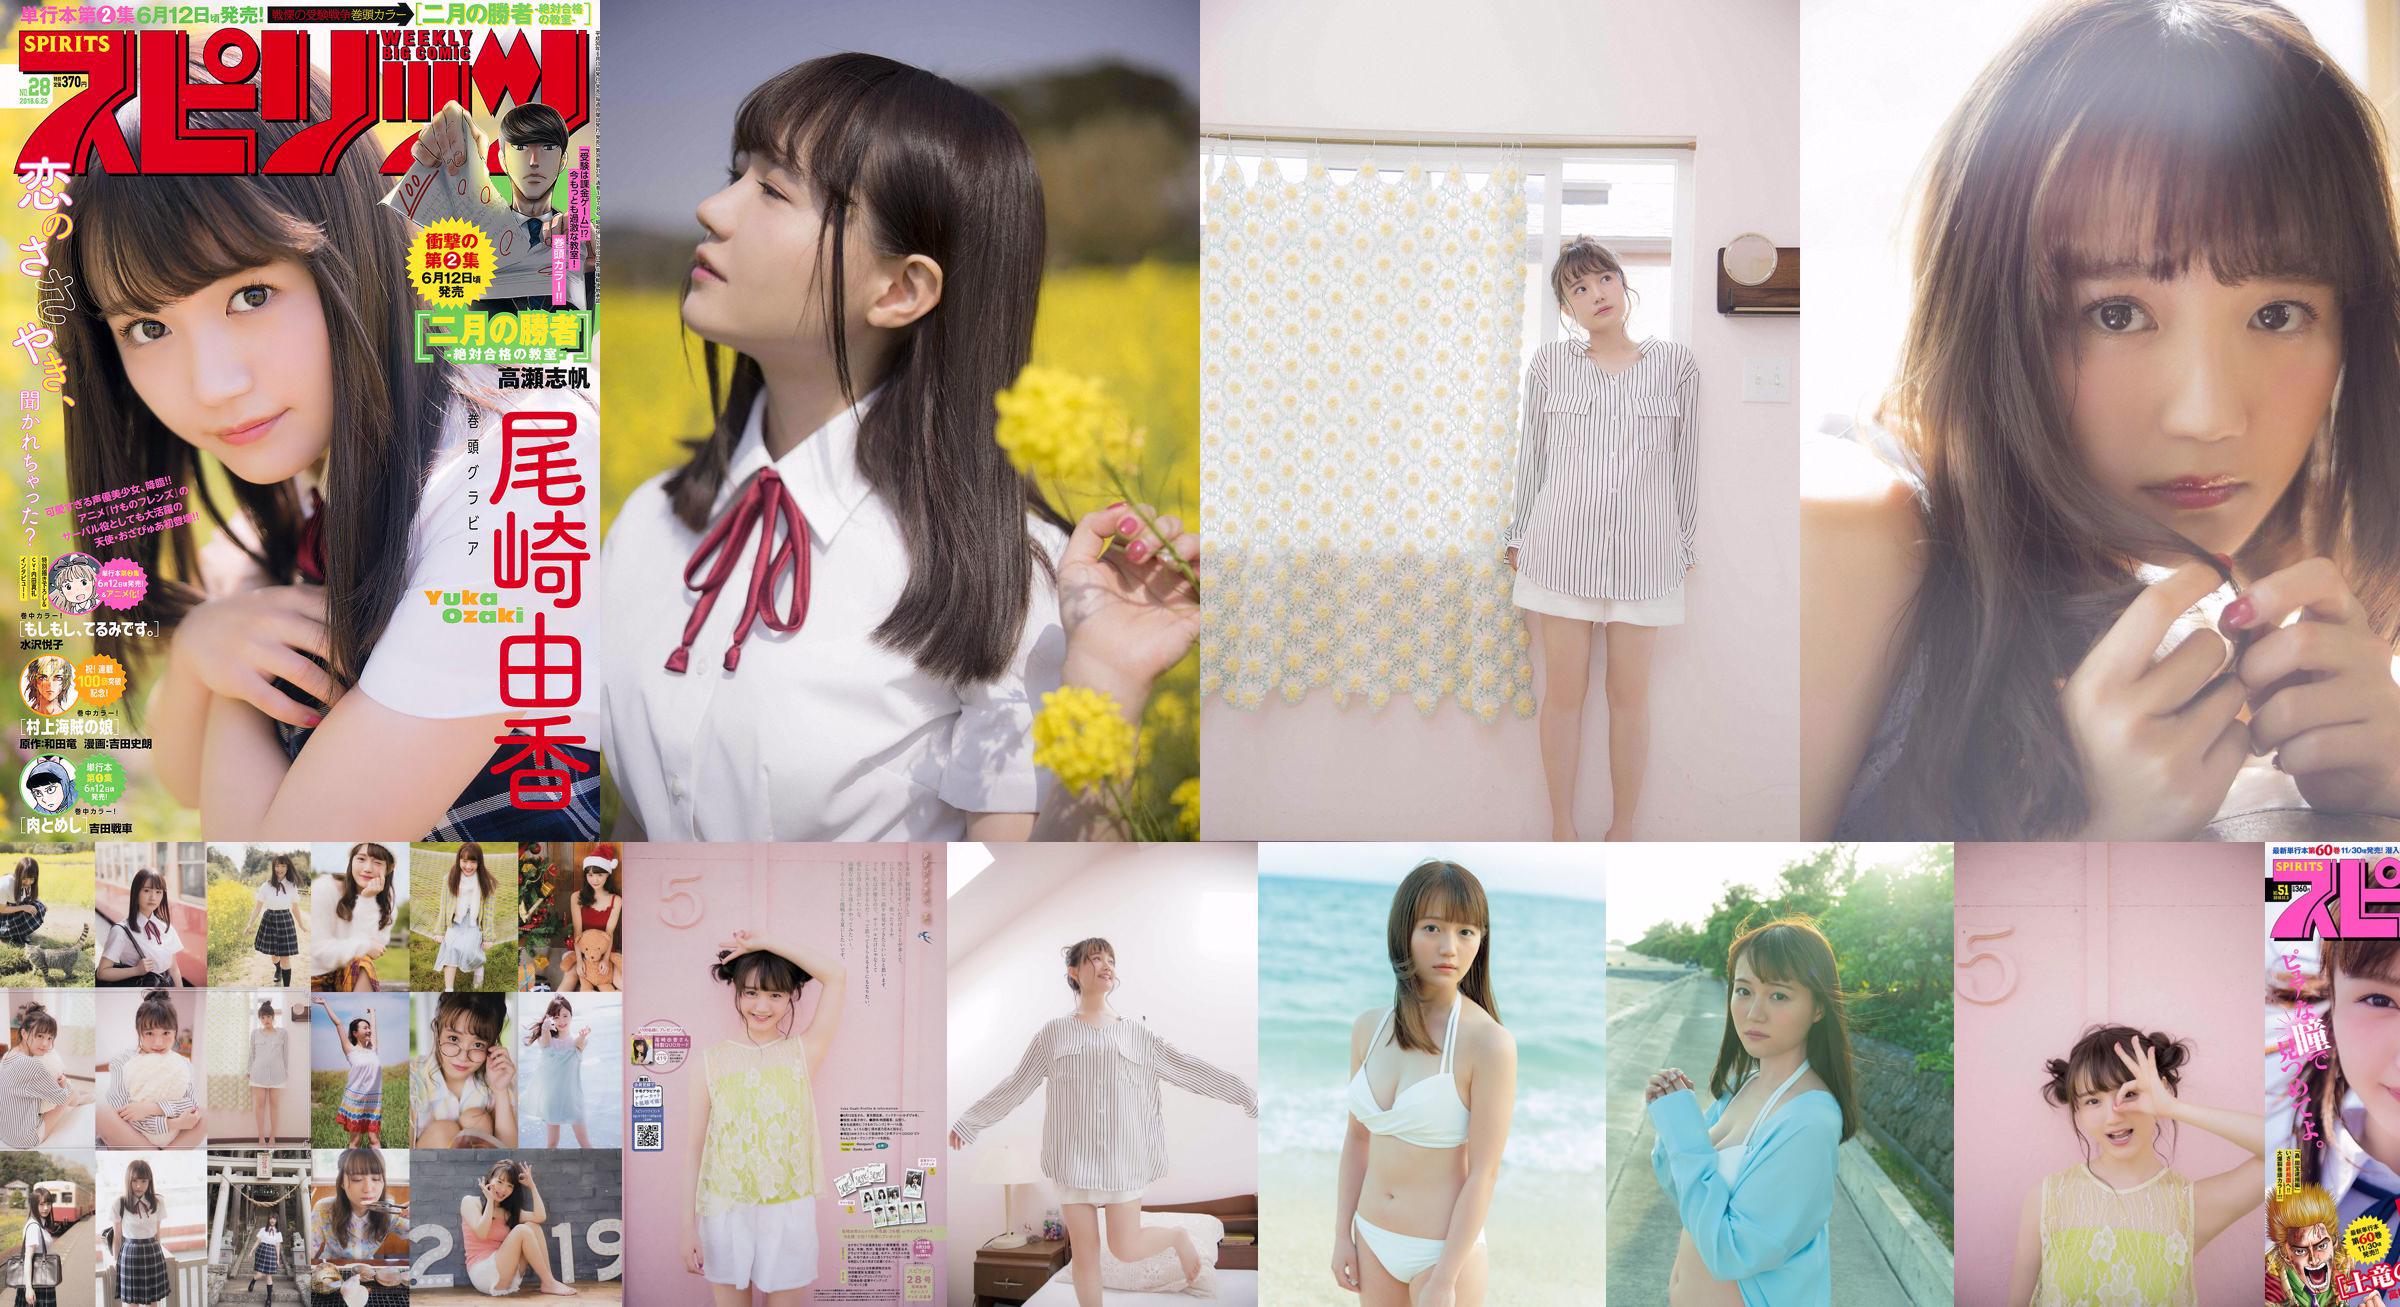 [VIERNES] Yuka Ozaki "El actor de voz del personaje principal del anime" Kemono Friends "ahora está en un bikini blanco" Foto No.7fe949 Página 1